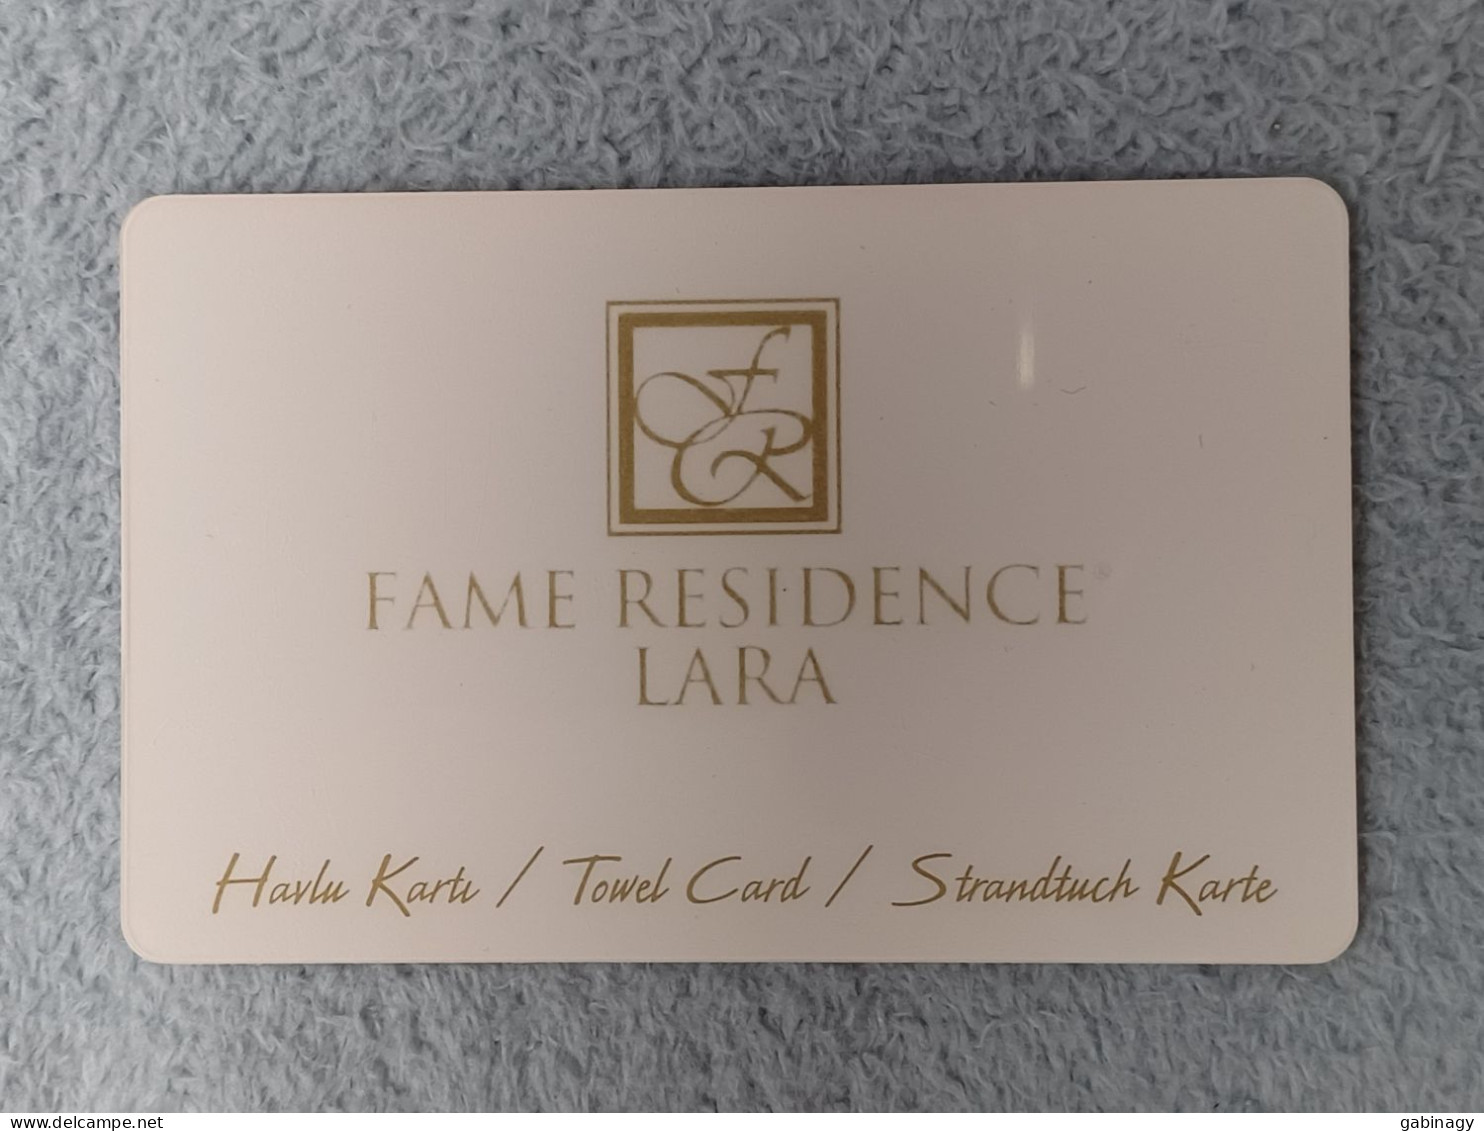 HOTEL KEYS - 2583 - TURKEY - FAME RESIDENCE LARA - Hotelsleutels (kaarten)